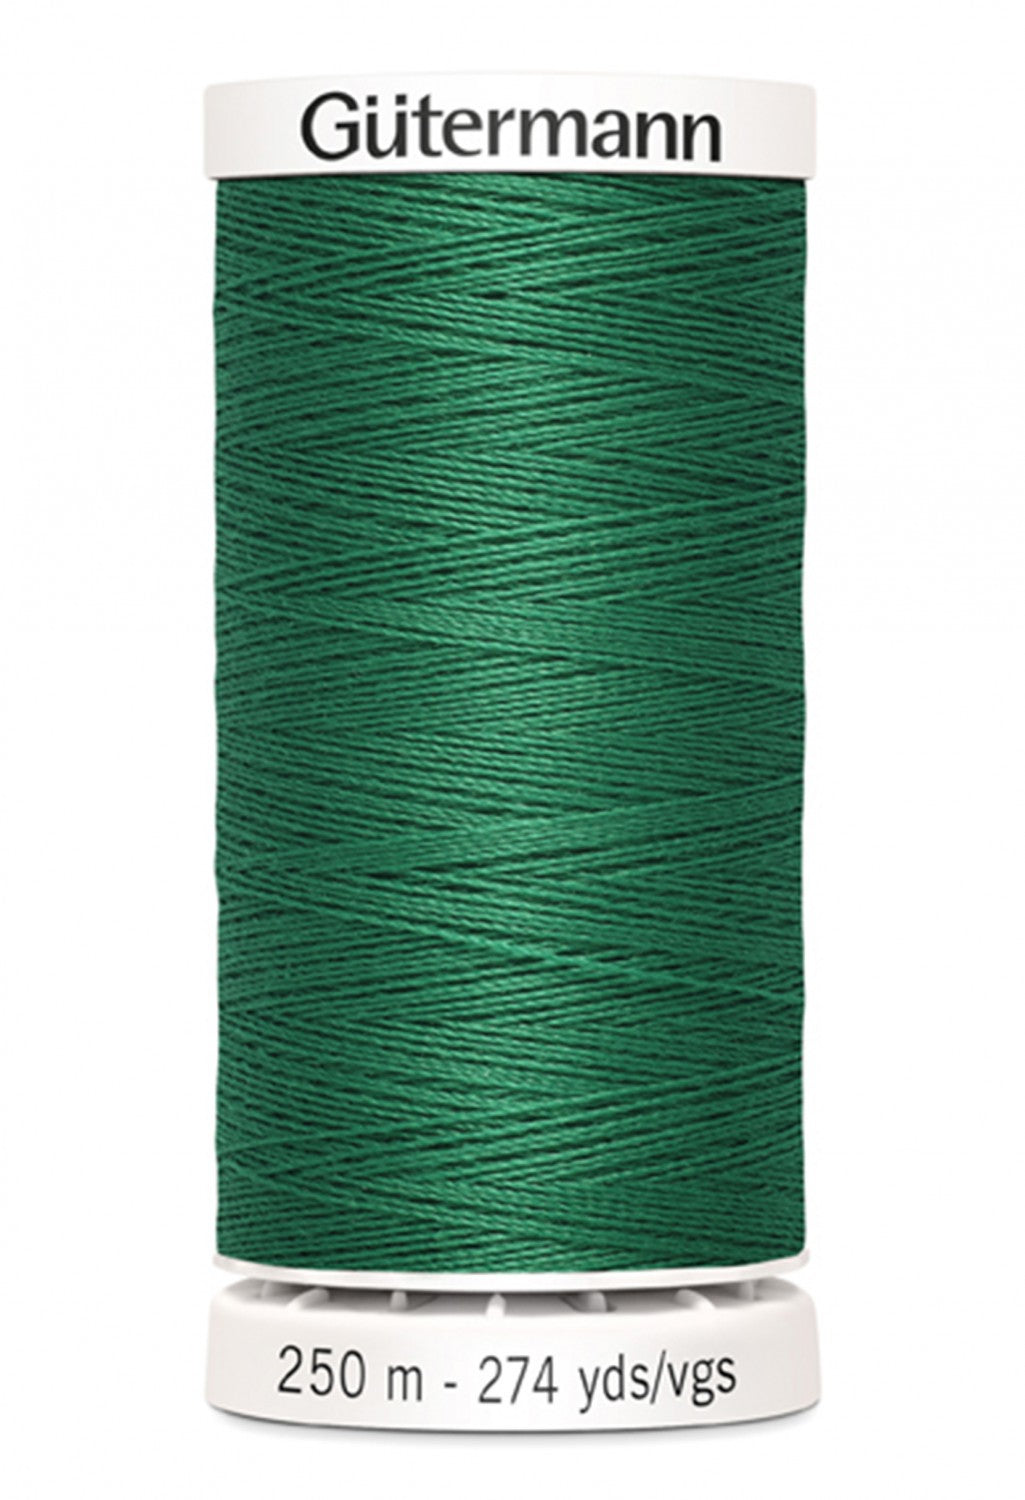 Gütermann Sew-All Thread 250m - Grass Green Col. 752